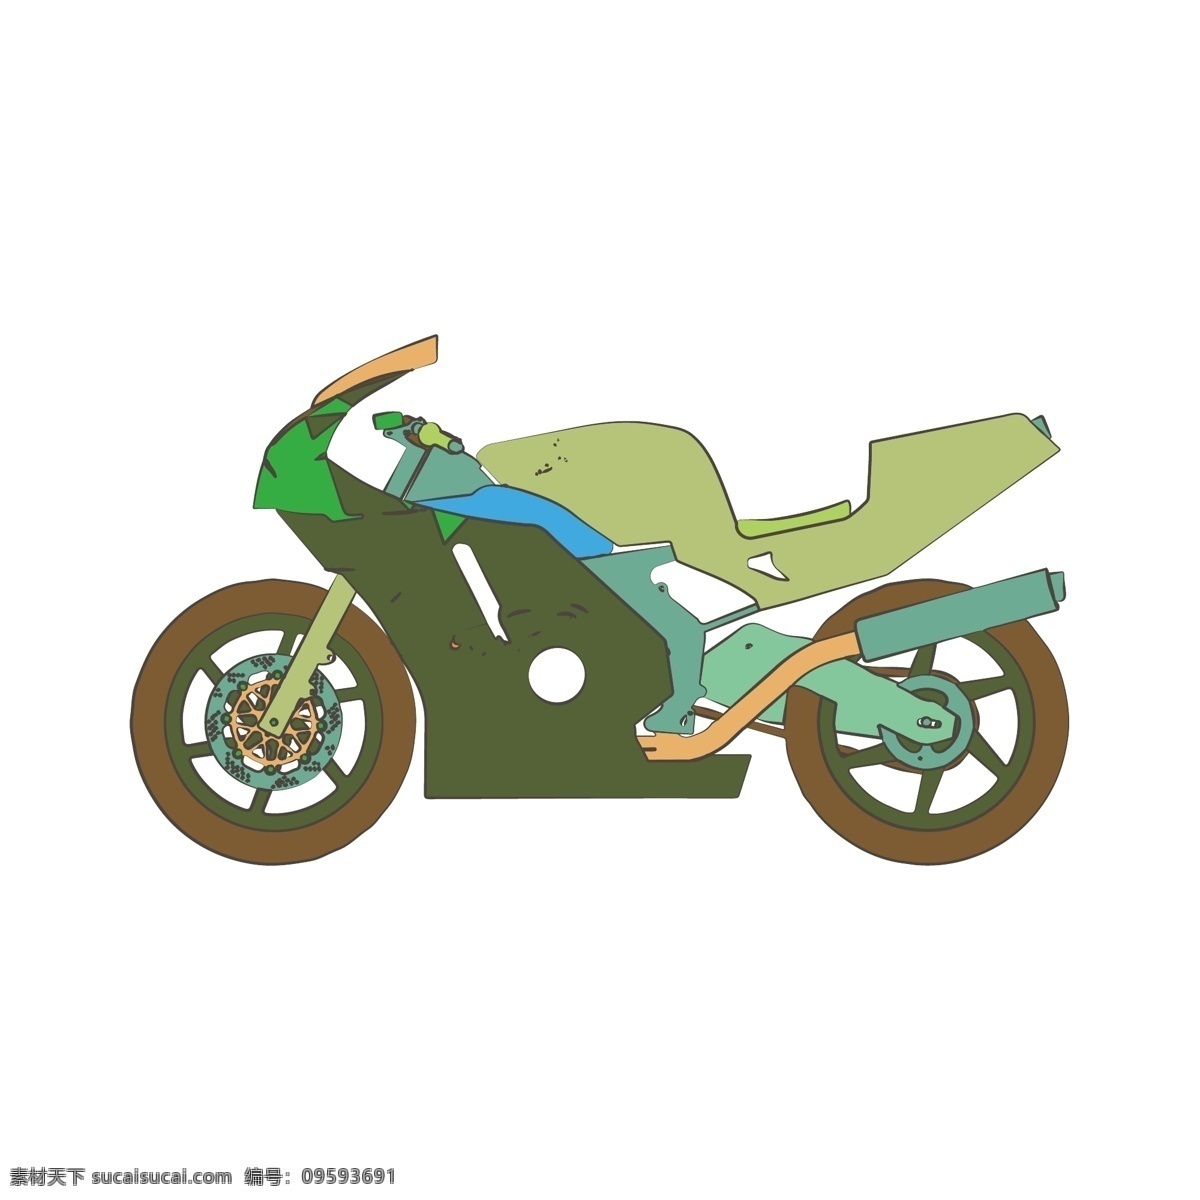 简约 扁平 卡通 漫 画风 机车 摩托车 矢量 元素 漫画风 撞色 插图